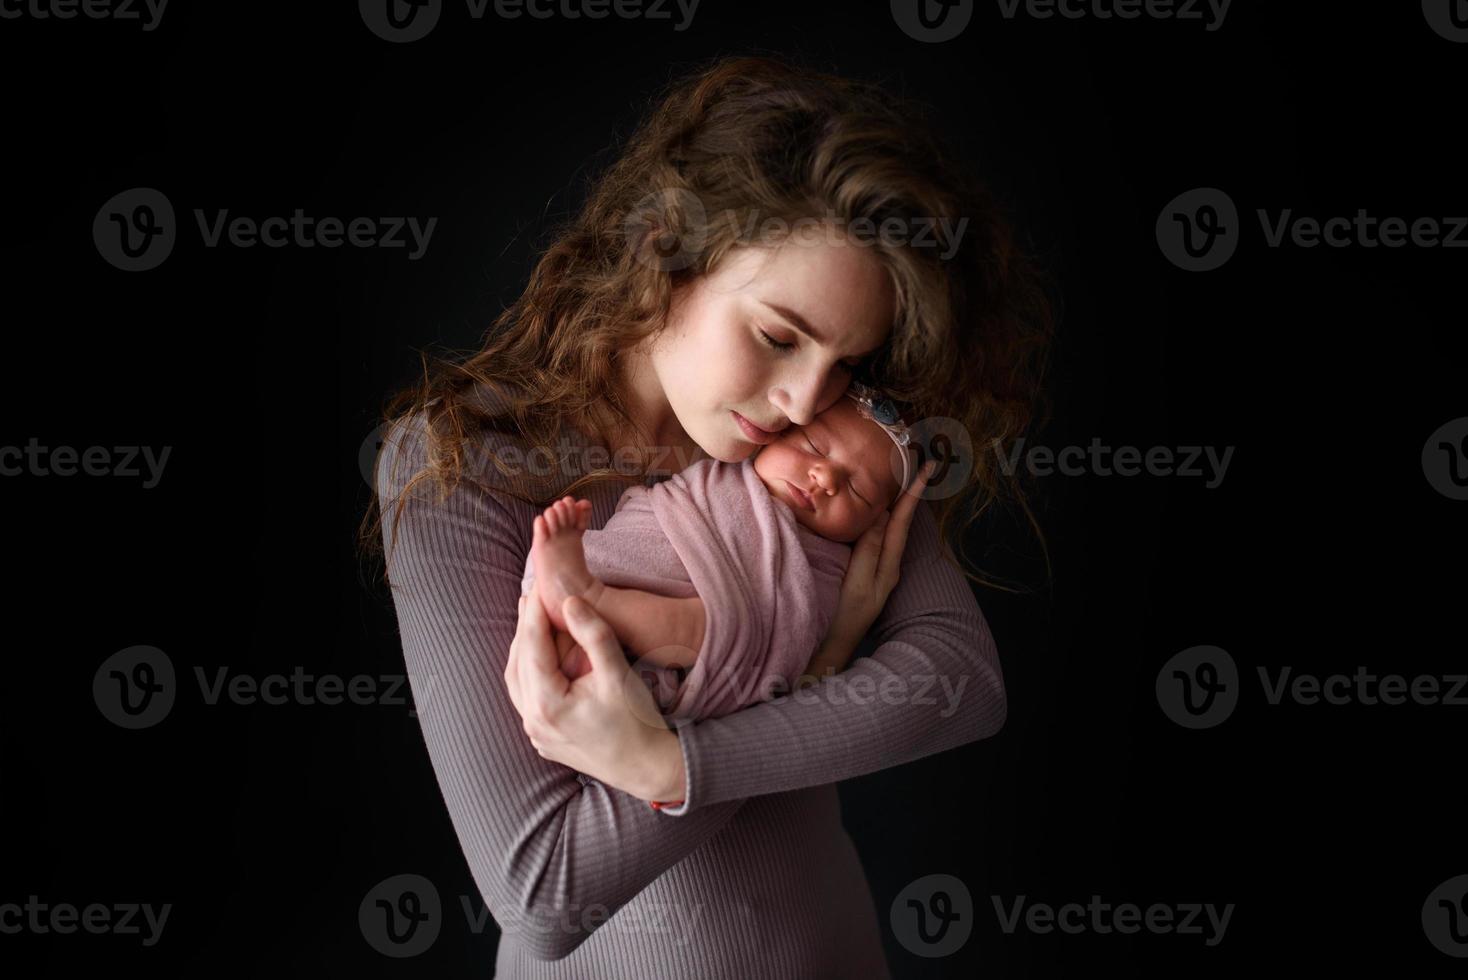 mamma håller i sin nyfödda dotter. bild tagen på en mörk bakgrund. foto